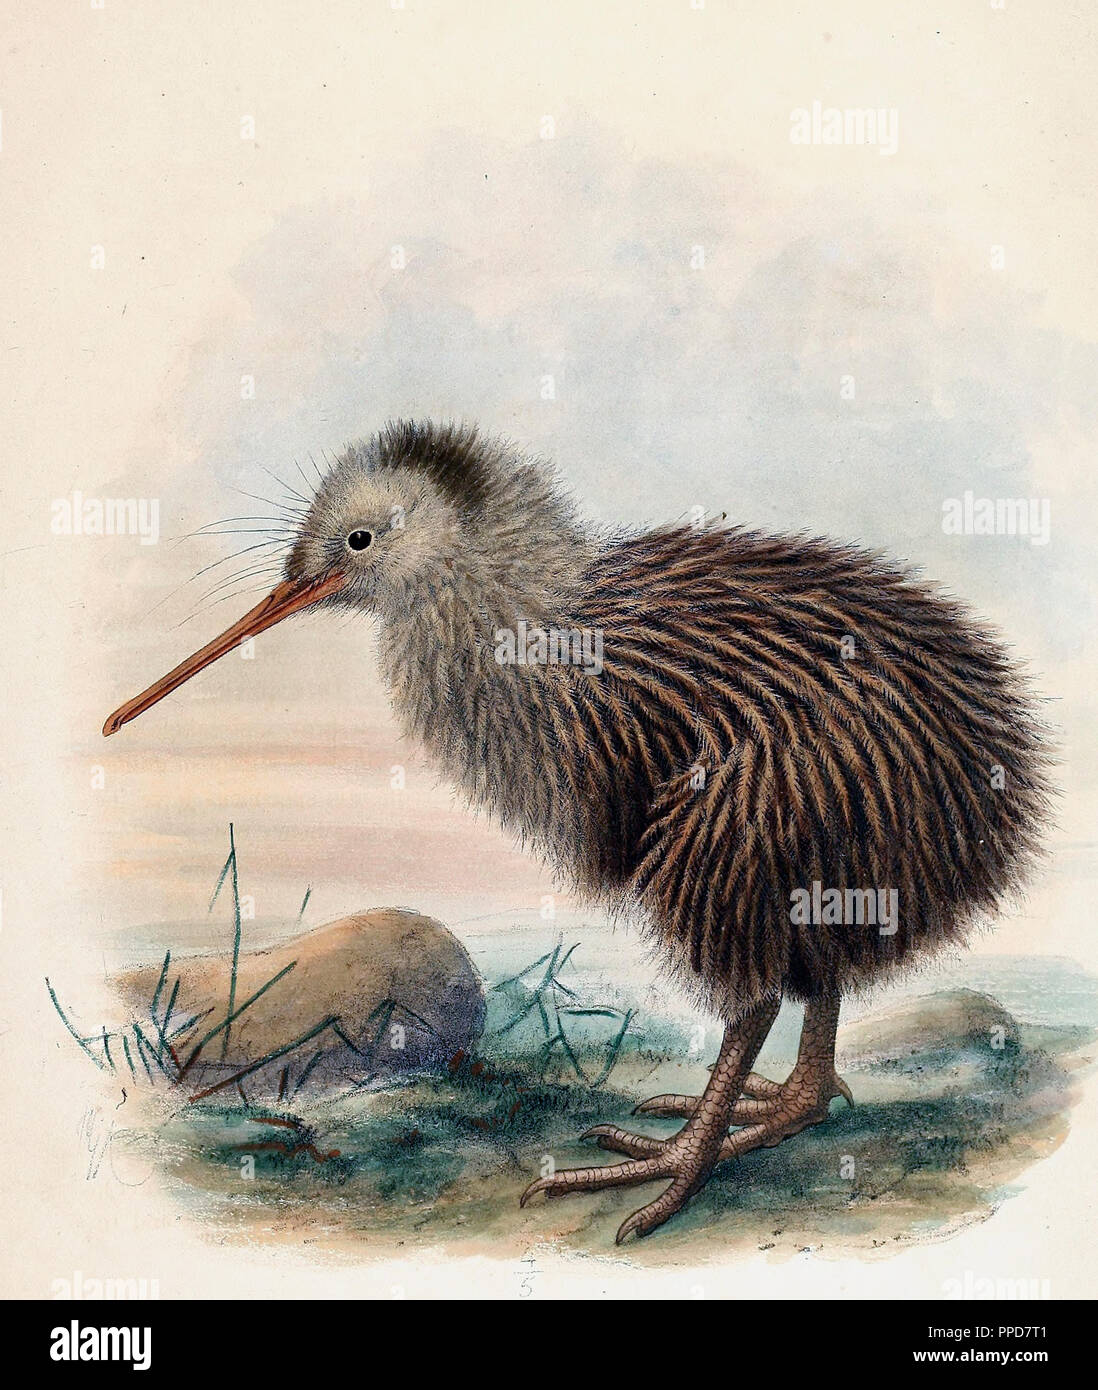 Apteryx australis - juvénile le sud brown kiwi, tokoeka ou commune, kiwi Apteryx australis, est une espèce de kiwi à partir de l'île Sud de la Nouvelle-Zélande Banque D'Images